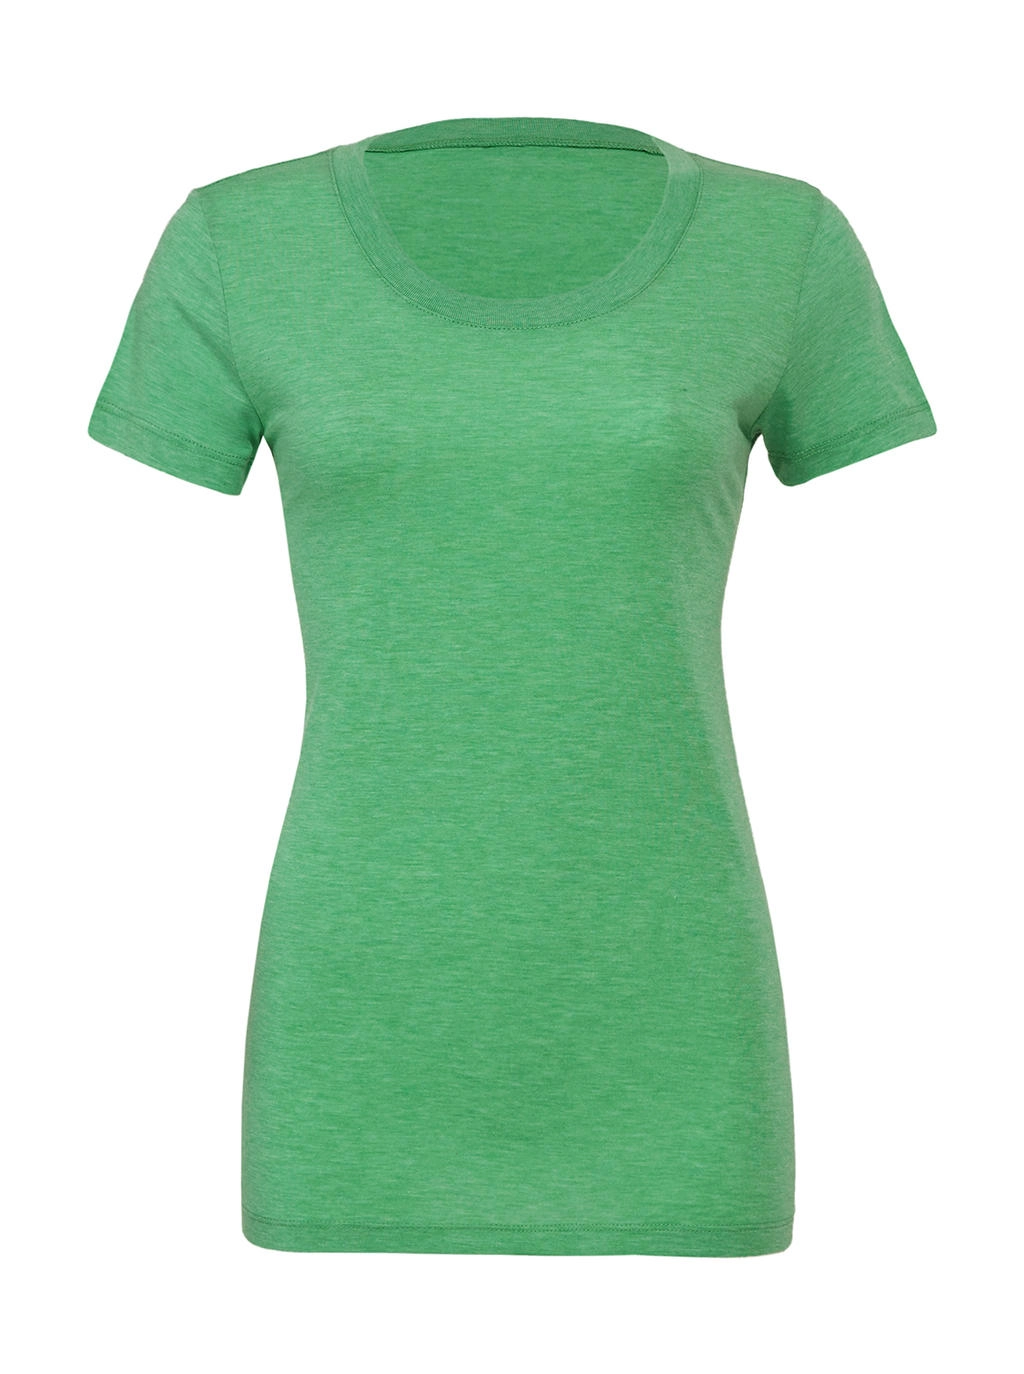 Triblend Crew Neck T-Shirt zum Besticken und Bedrucken in der Farbe Green Triblend mit Ihren Logo, Schriftzug oder Motiv.